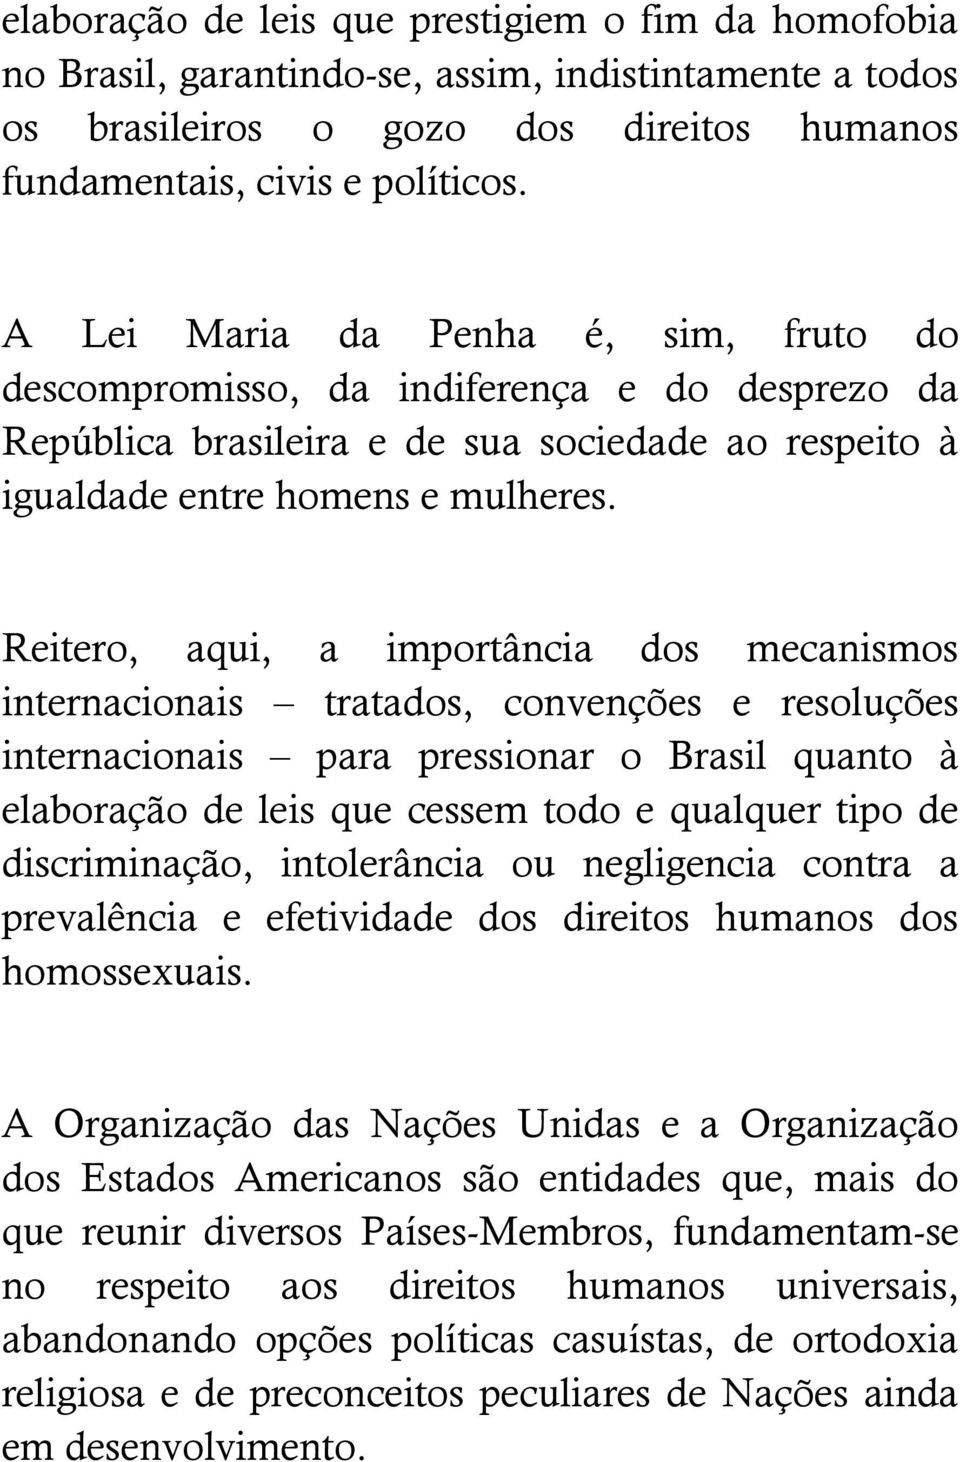 Reitero, aqui, a importância dos mecanismos internacionais tratados, convenções e resoluções internacionais para pressionar o Brasil quanto à elaboração de leis que cessem todo e qualquer tipo de